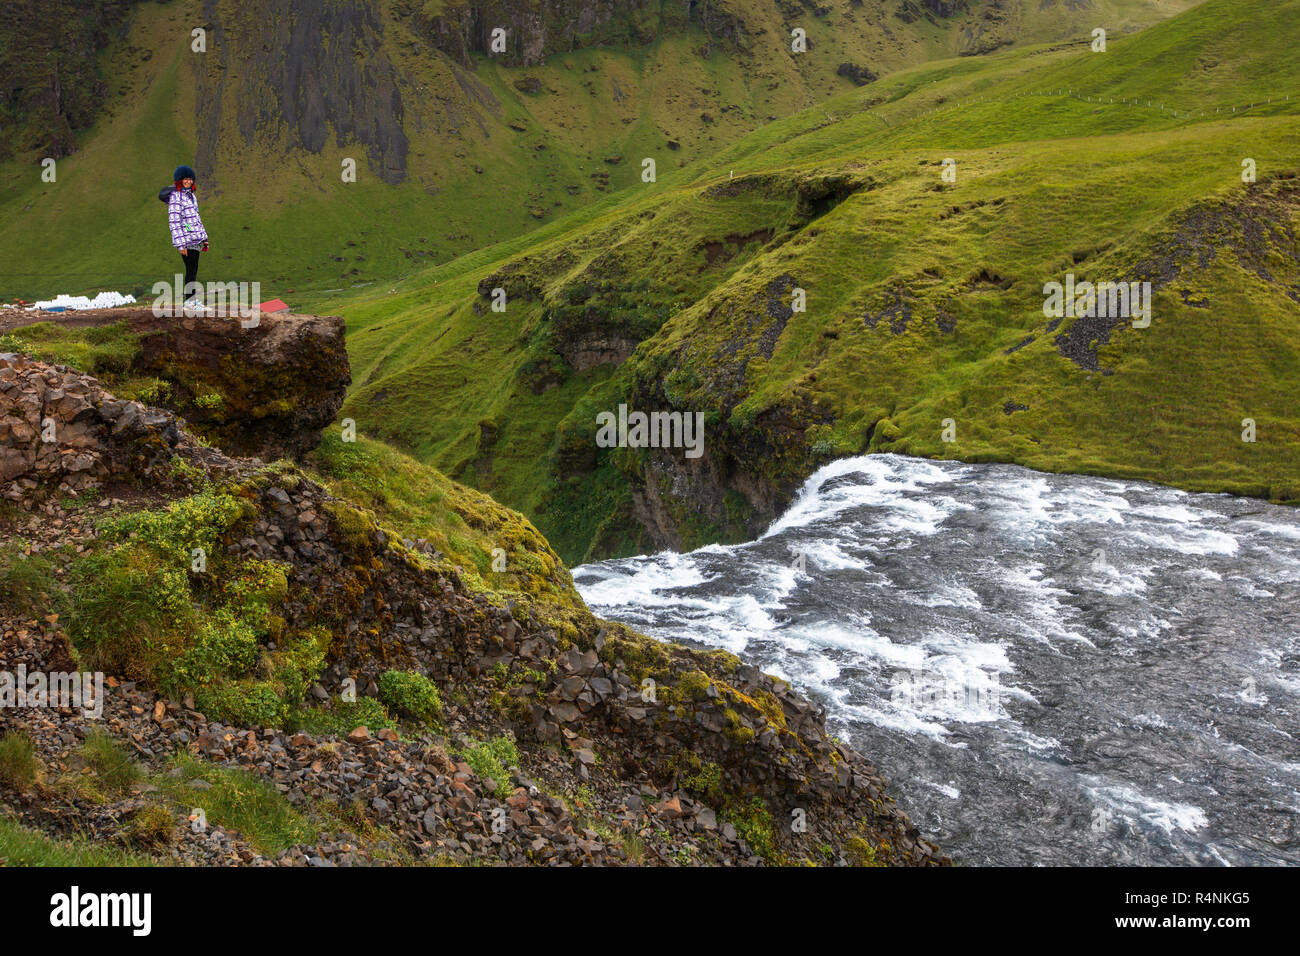 Les touristes Visitez Skogafoss, l'un des plus emblématiques de cascades d'Islande. Situé près de l'autoroute une (aussi connu sous le nom de Ring Road), la cascade de 60 mètres des cascades et a des sentiers qui permettent aux visiteurs de marcher jusqu'à l'arrière et le haut de la chute. La cascade est située sur la rivière Skoga, qui traverse les hautes terres d'Islande avant d'atteindre l'océan Atlantique. Banque D'Images